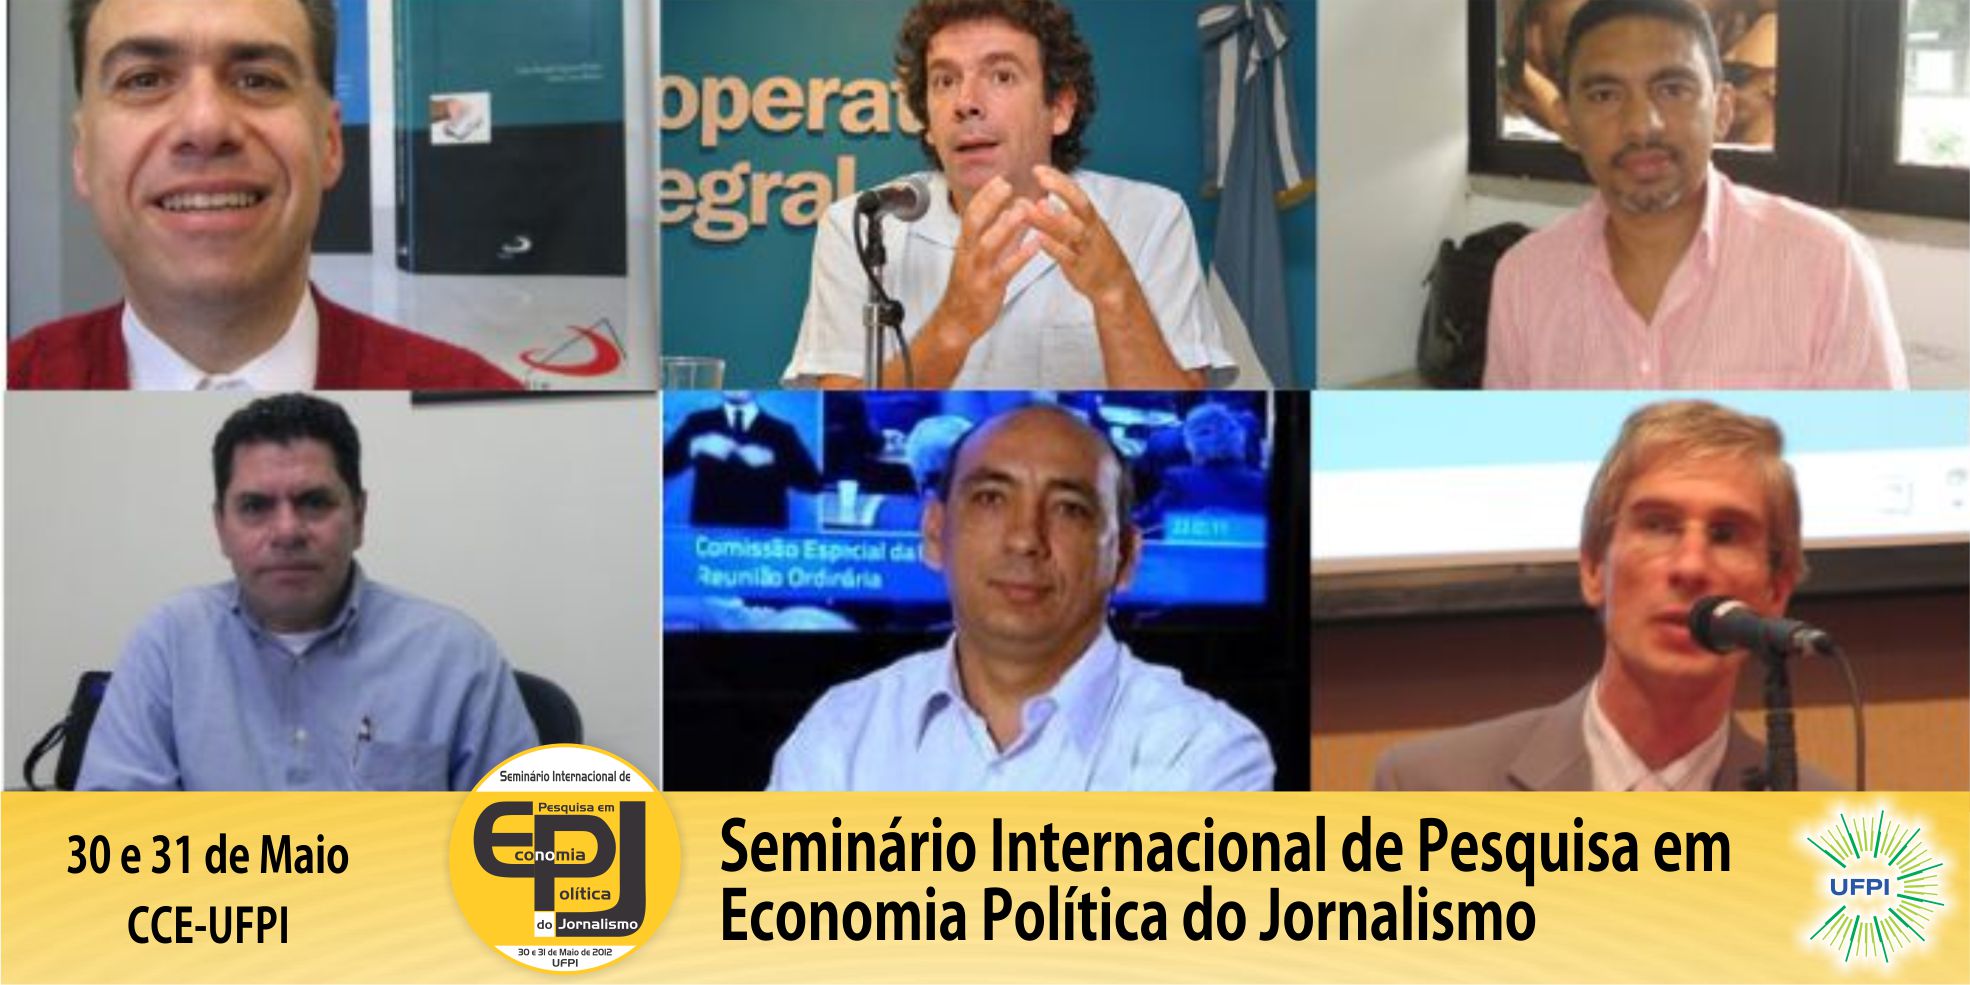 UFPI sedia Seminário Internacional de Economia Política do Jornalismo